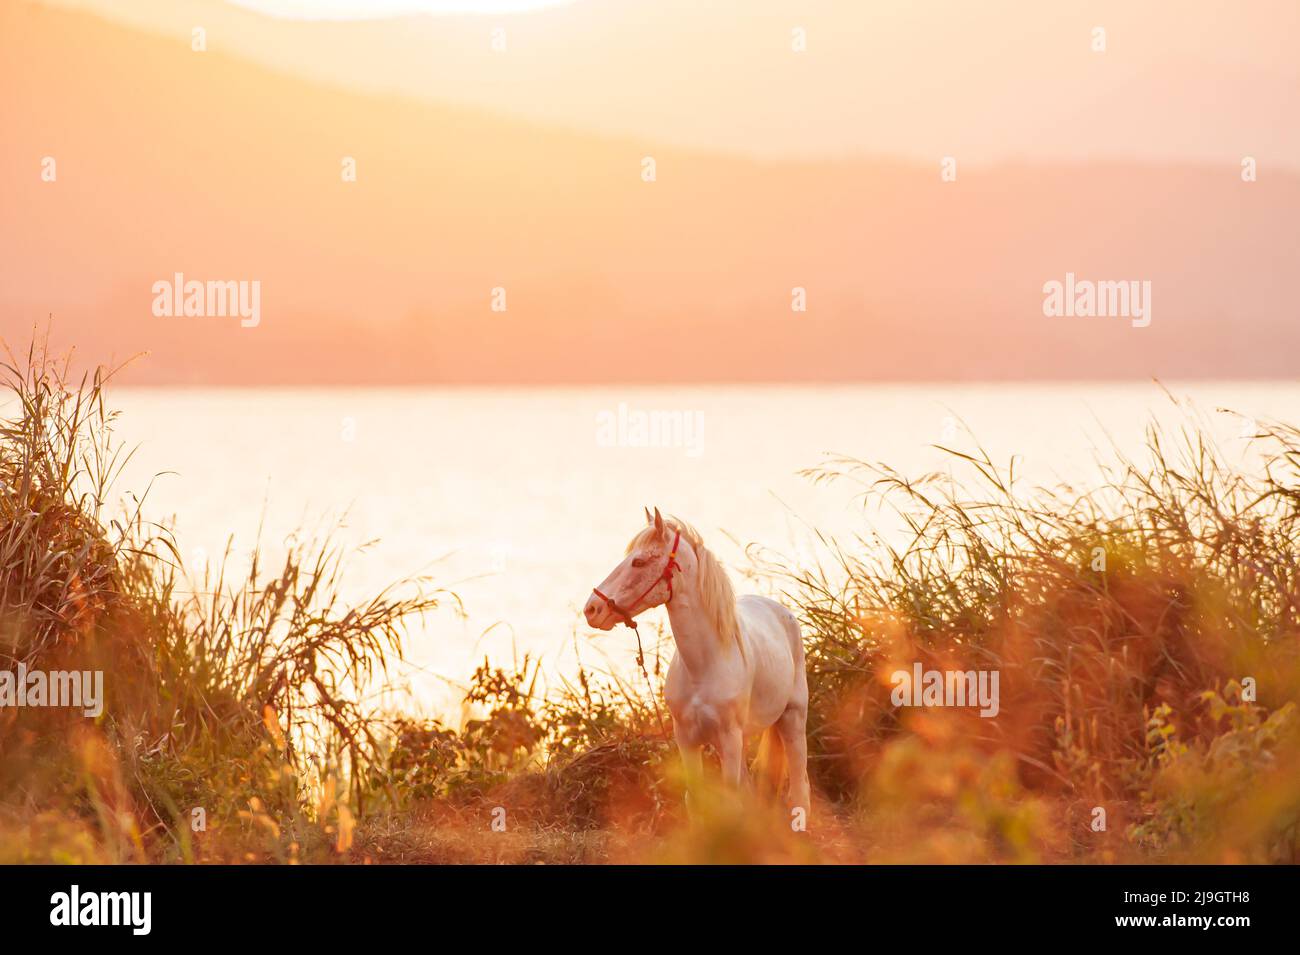 Un cavallo bianco si sgrana sulla prateria durante il tramonto, con un lago e montagne sullo sfondo. Thailandia occidentale. Concentratevi sulla testa del cavallo. Foto Stock